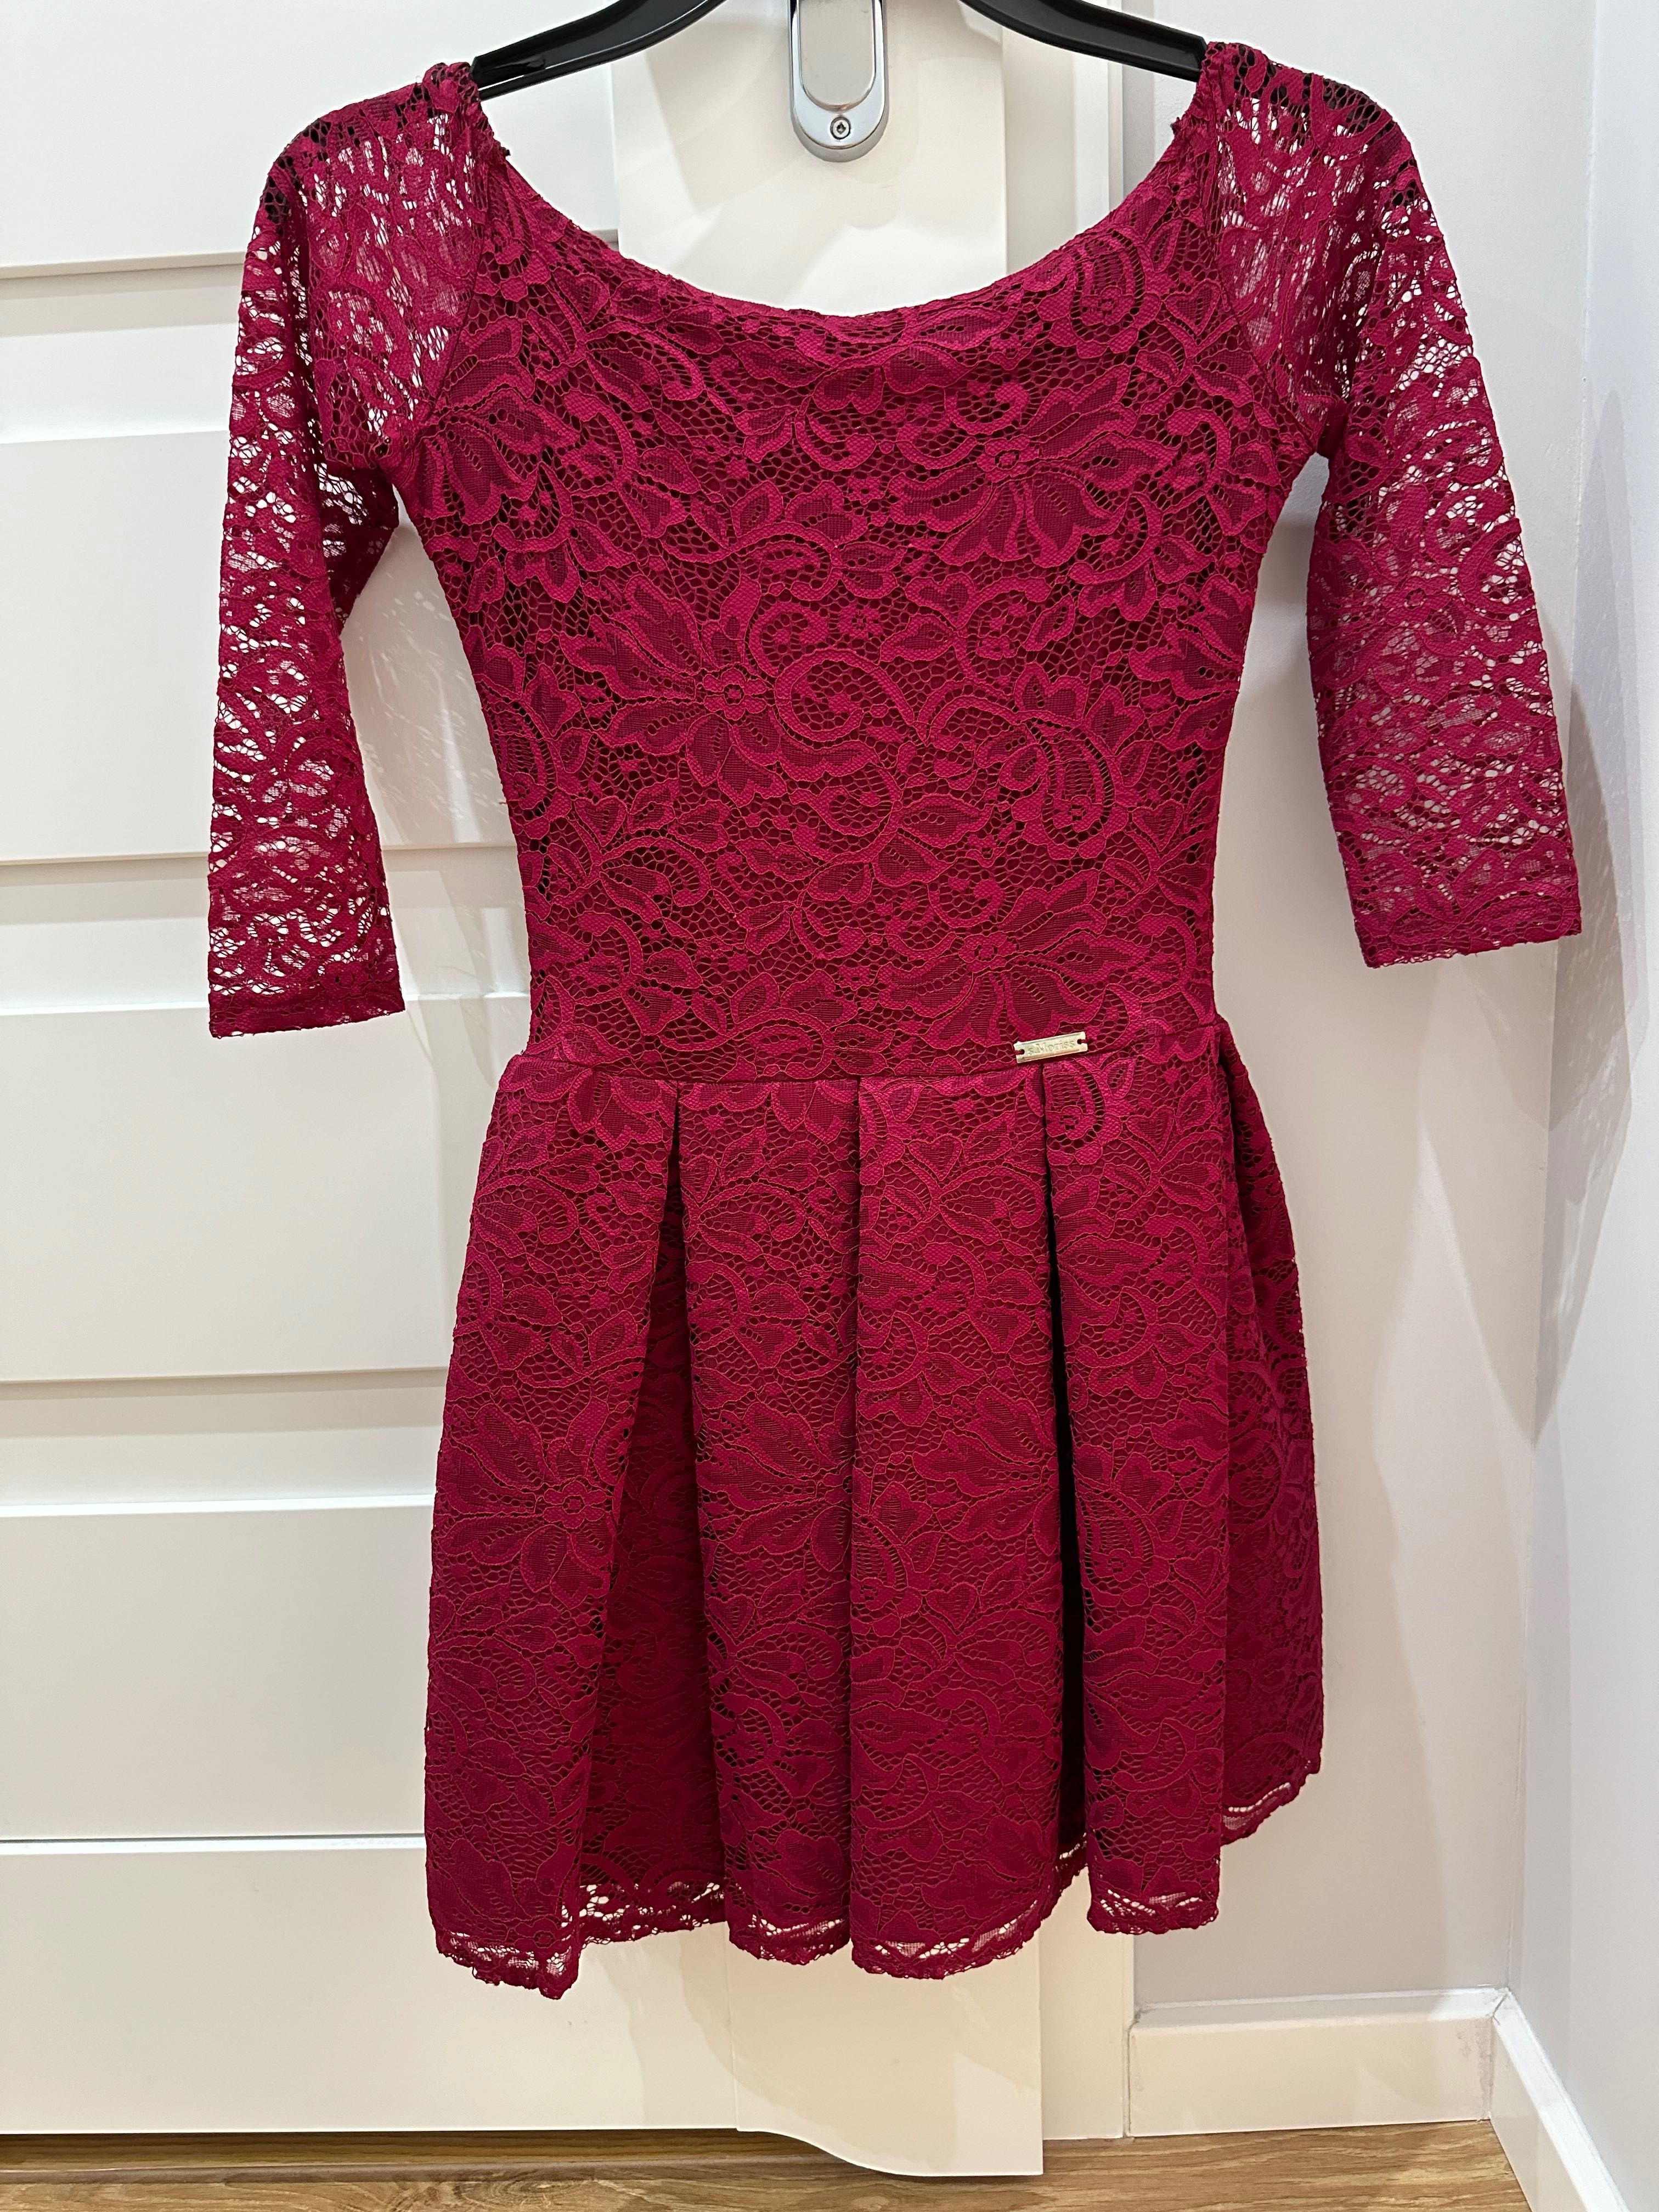 Sukienka bordowa czerwona koronkowa rozmiar 34 XS